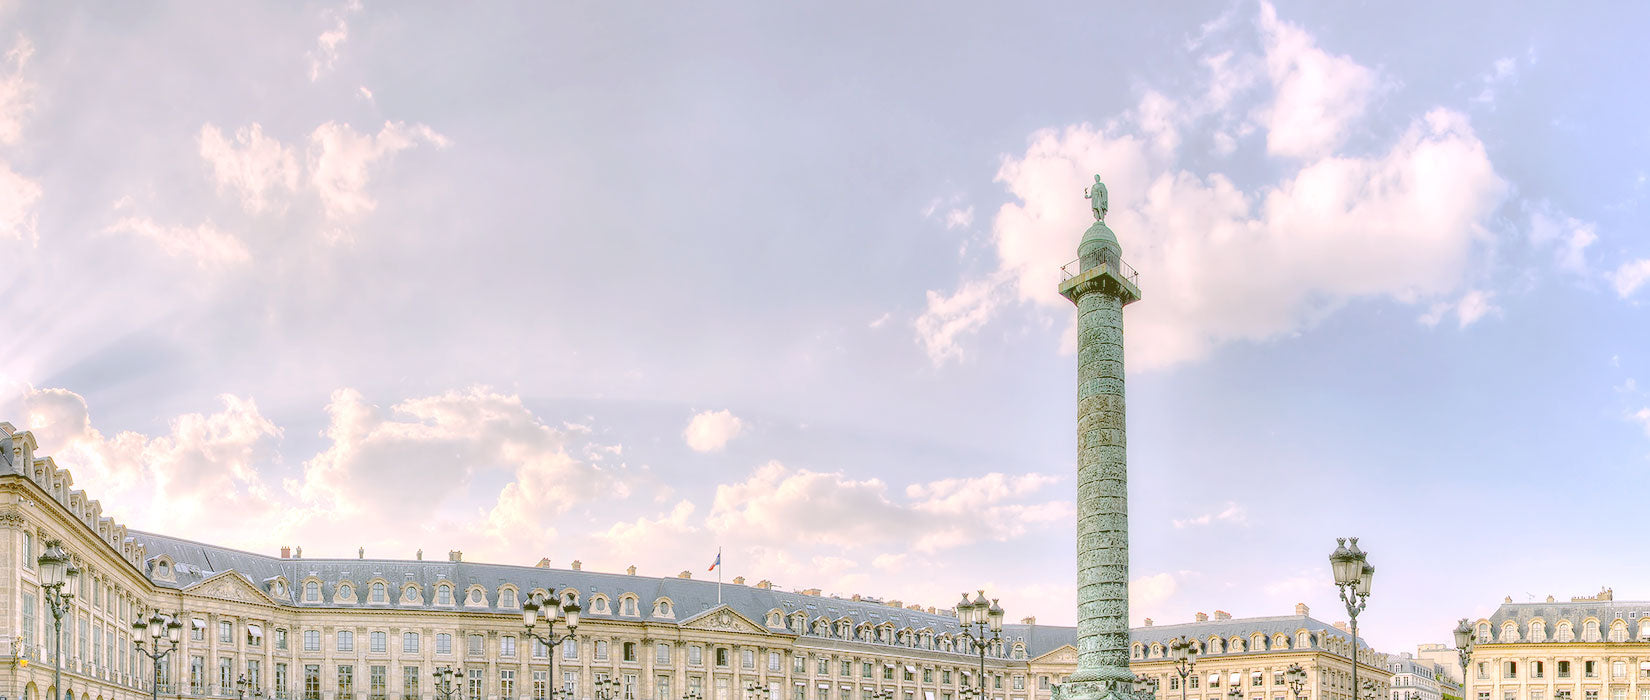 Place Vendôme avec ses bâtiments luxueux et sa colonne. C'est l'une des plus prestigieuses place de Paris mais aussi le siège social de reborn